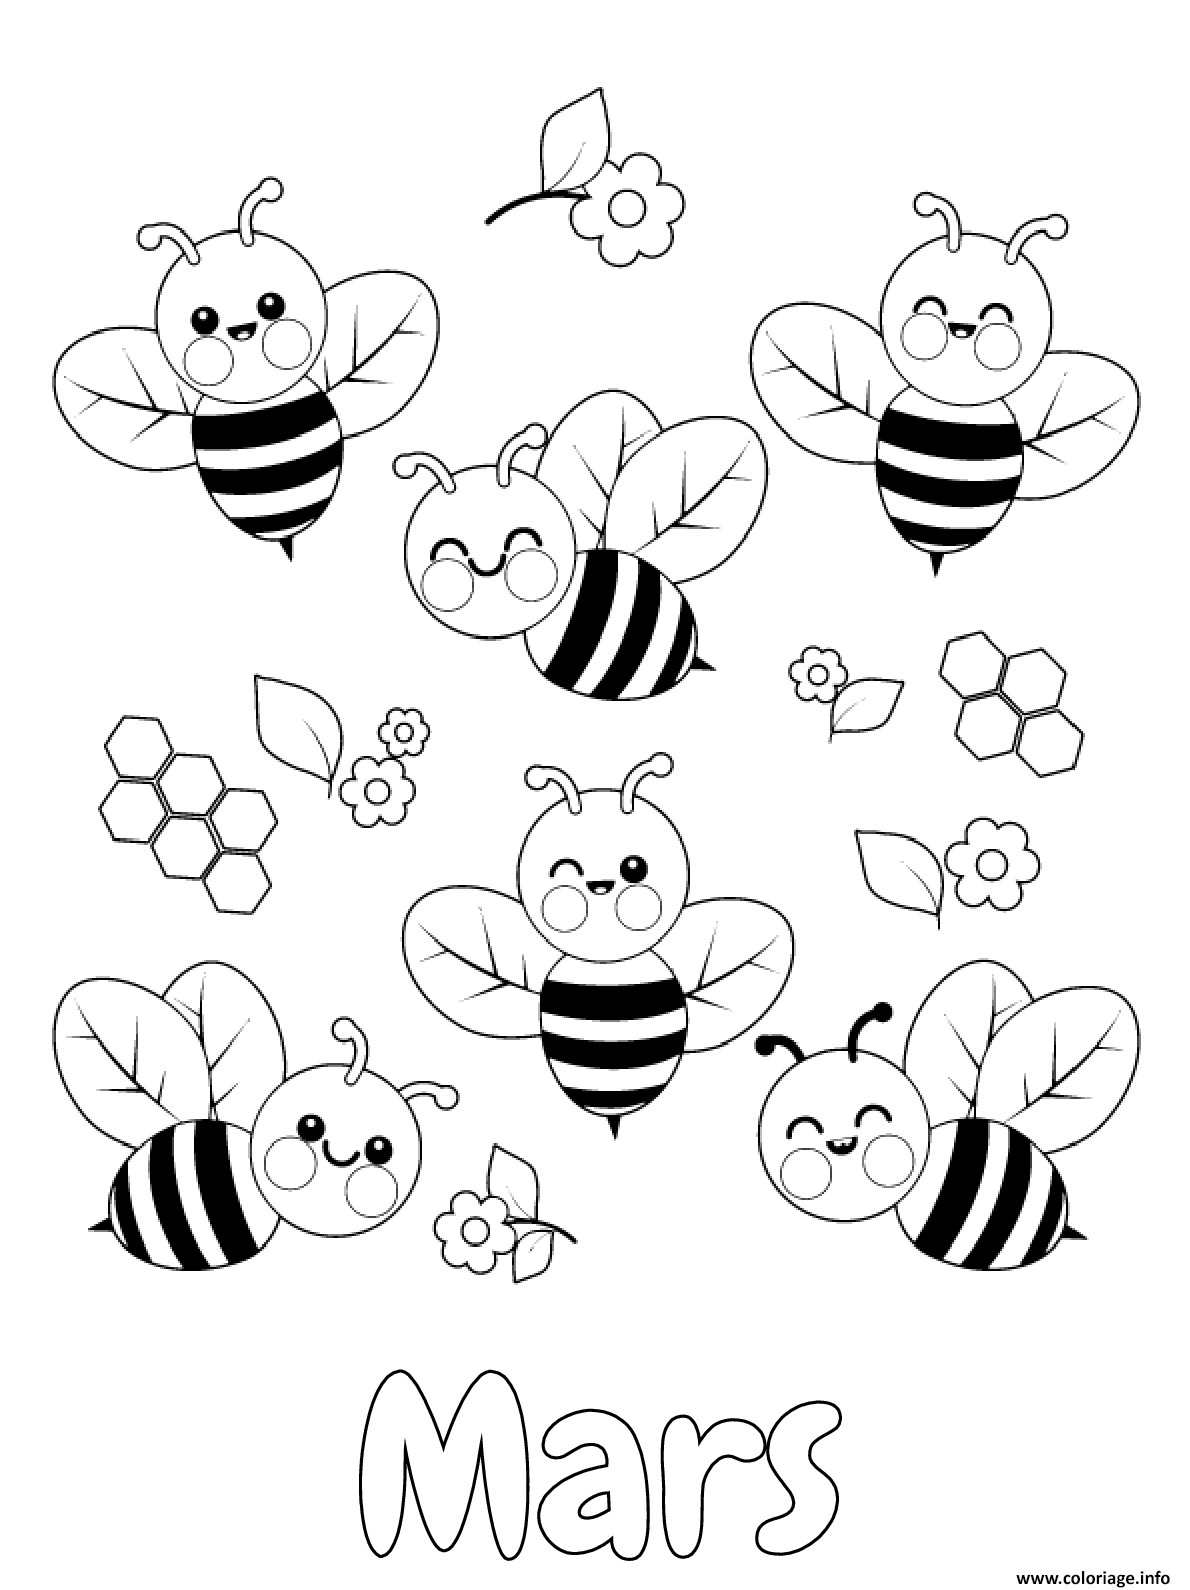 Dessin mois de mars abeilles miel Coloriage Gratuit à Imprimer